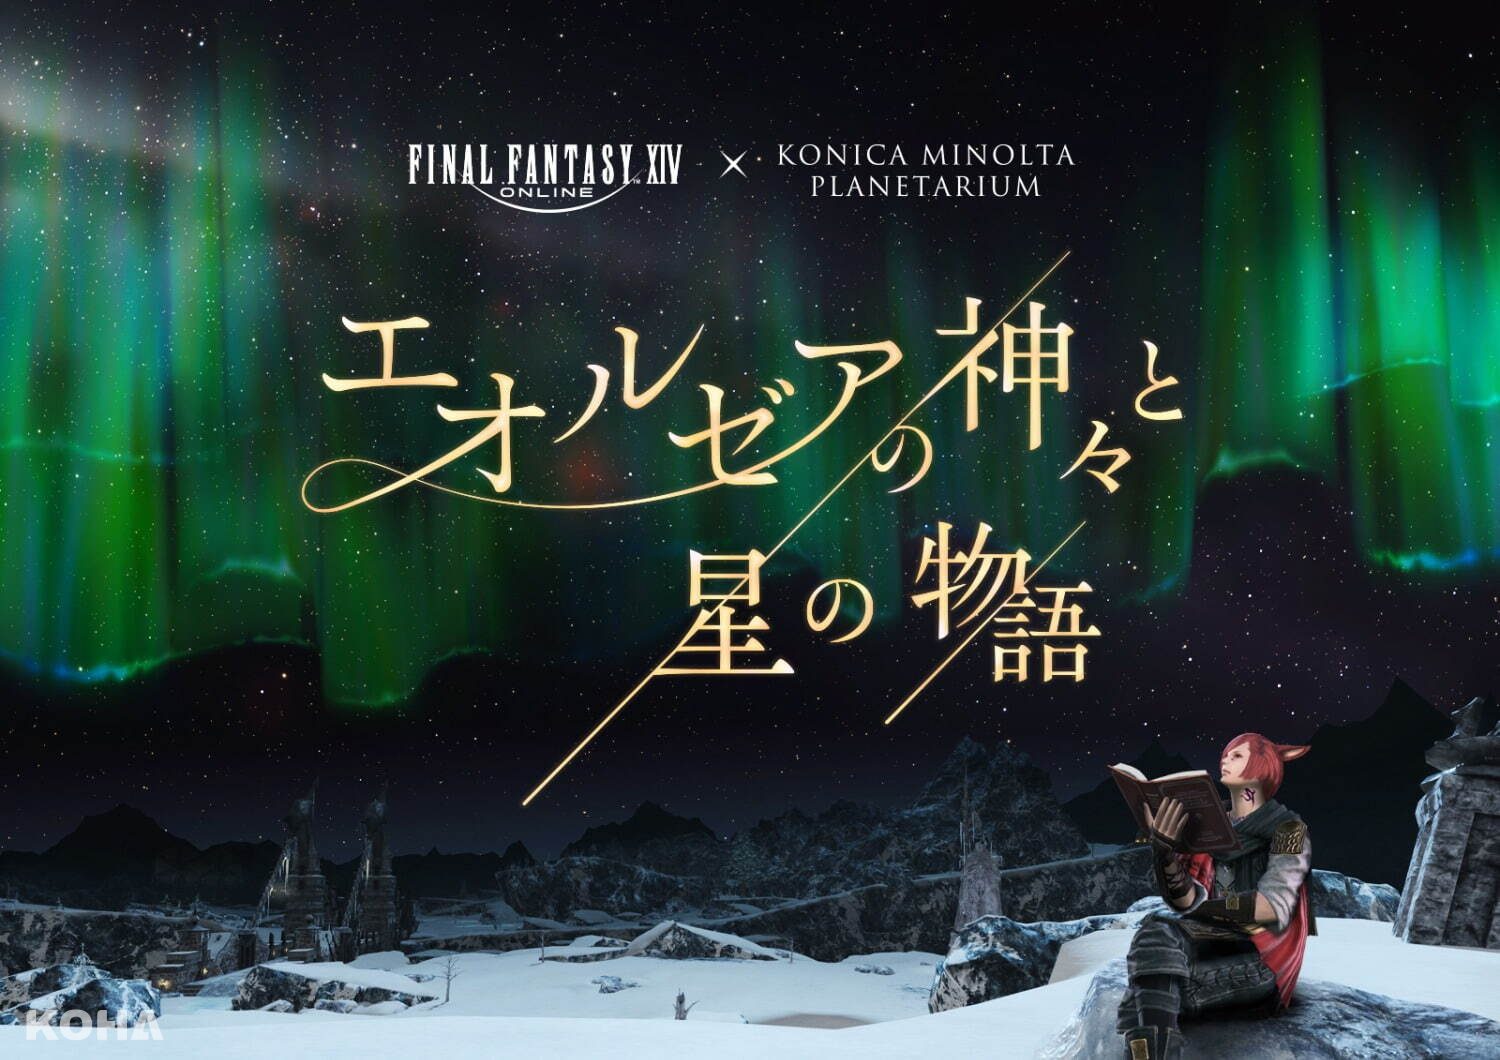 星海幻境：艾歐澤亞神話與星群傳說   Final Fantasy XIV 與 Konica Minolta Planetarium的奇幻合作